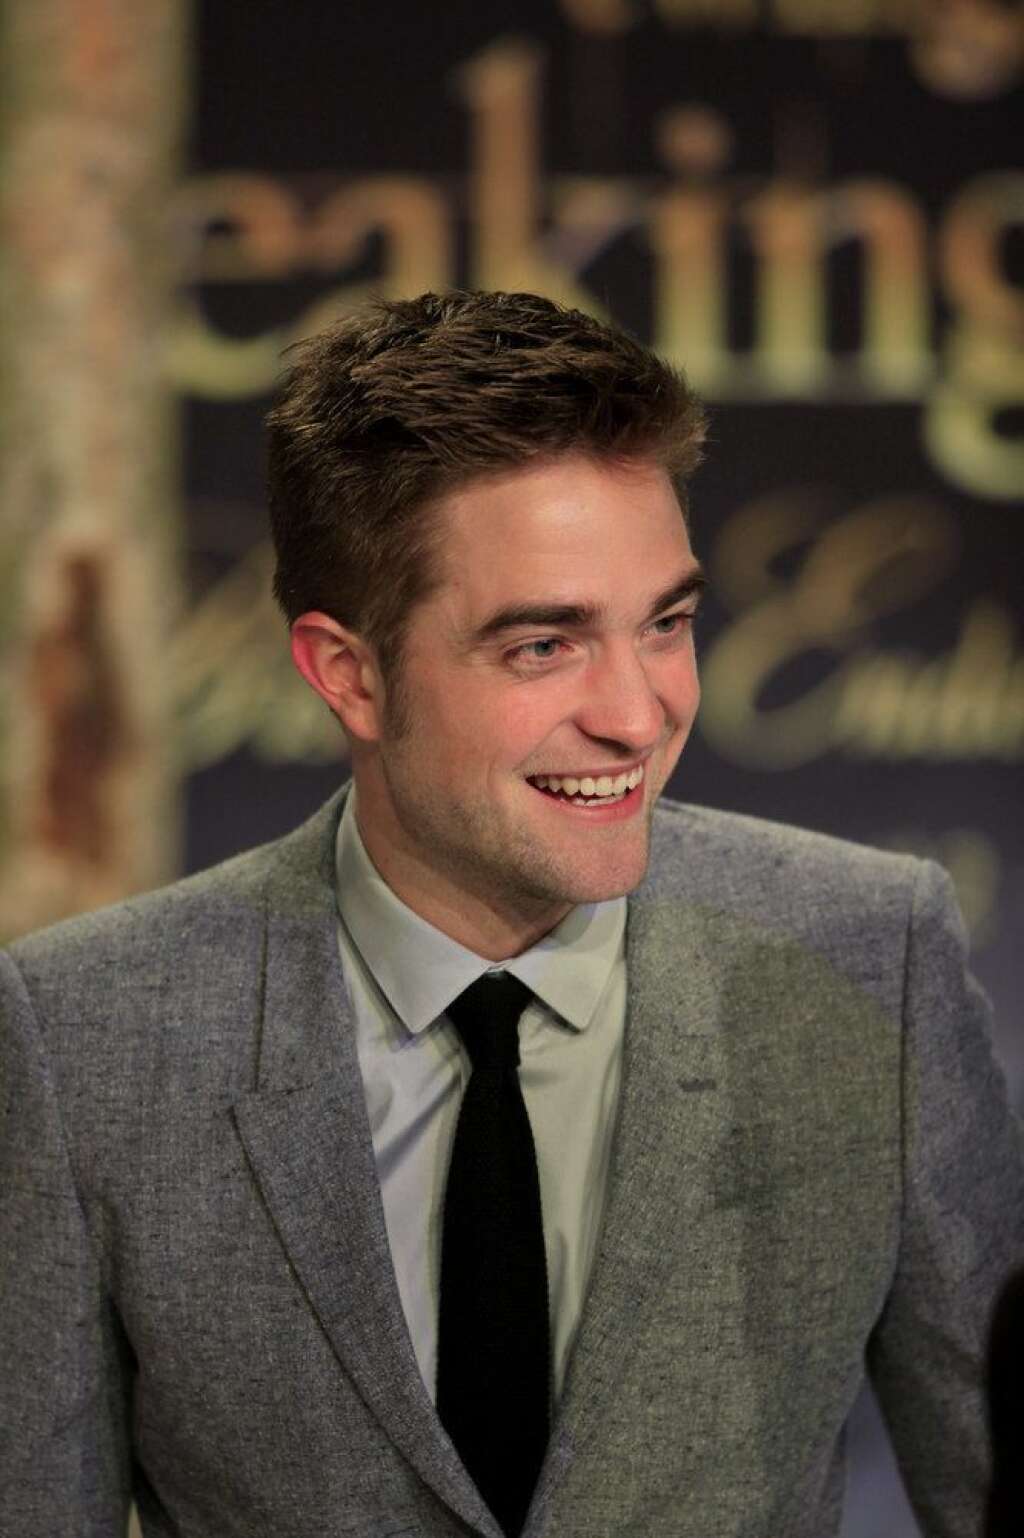 Robert Pattinson - Dans une interview accordée à "<a href="http://www.mtv.com/news/articles/1607791/robert-pattinson-admits-lazy-hygiene-habits.jhtml">Extra</a>", la star de "Twilight" a avoué qu'il ne s'était pas lavé les cheveux pendant 6 semaines et qu'il ne prêtait pas non plus attention à la propreté de son appartement.